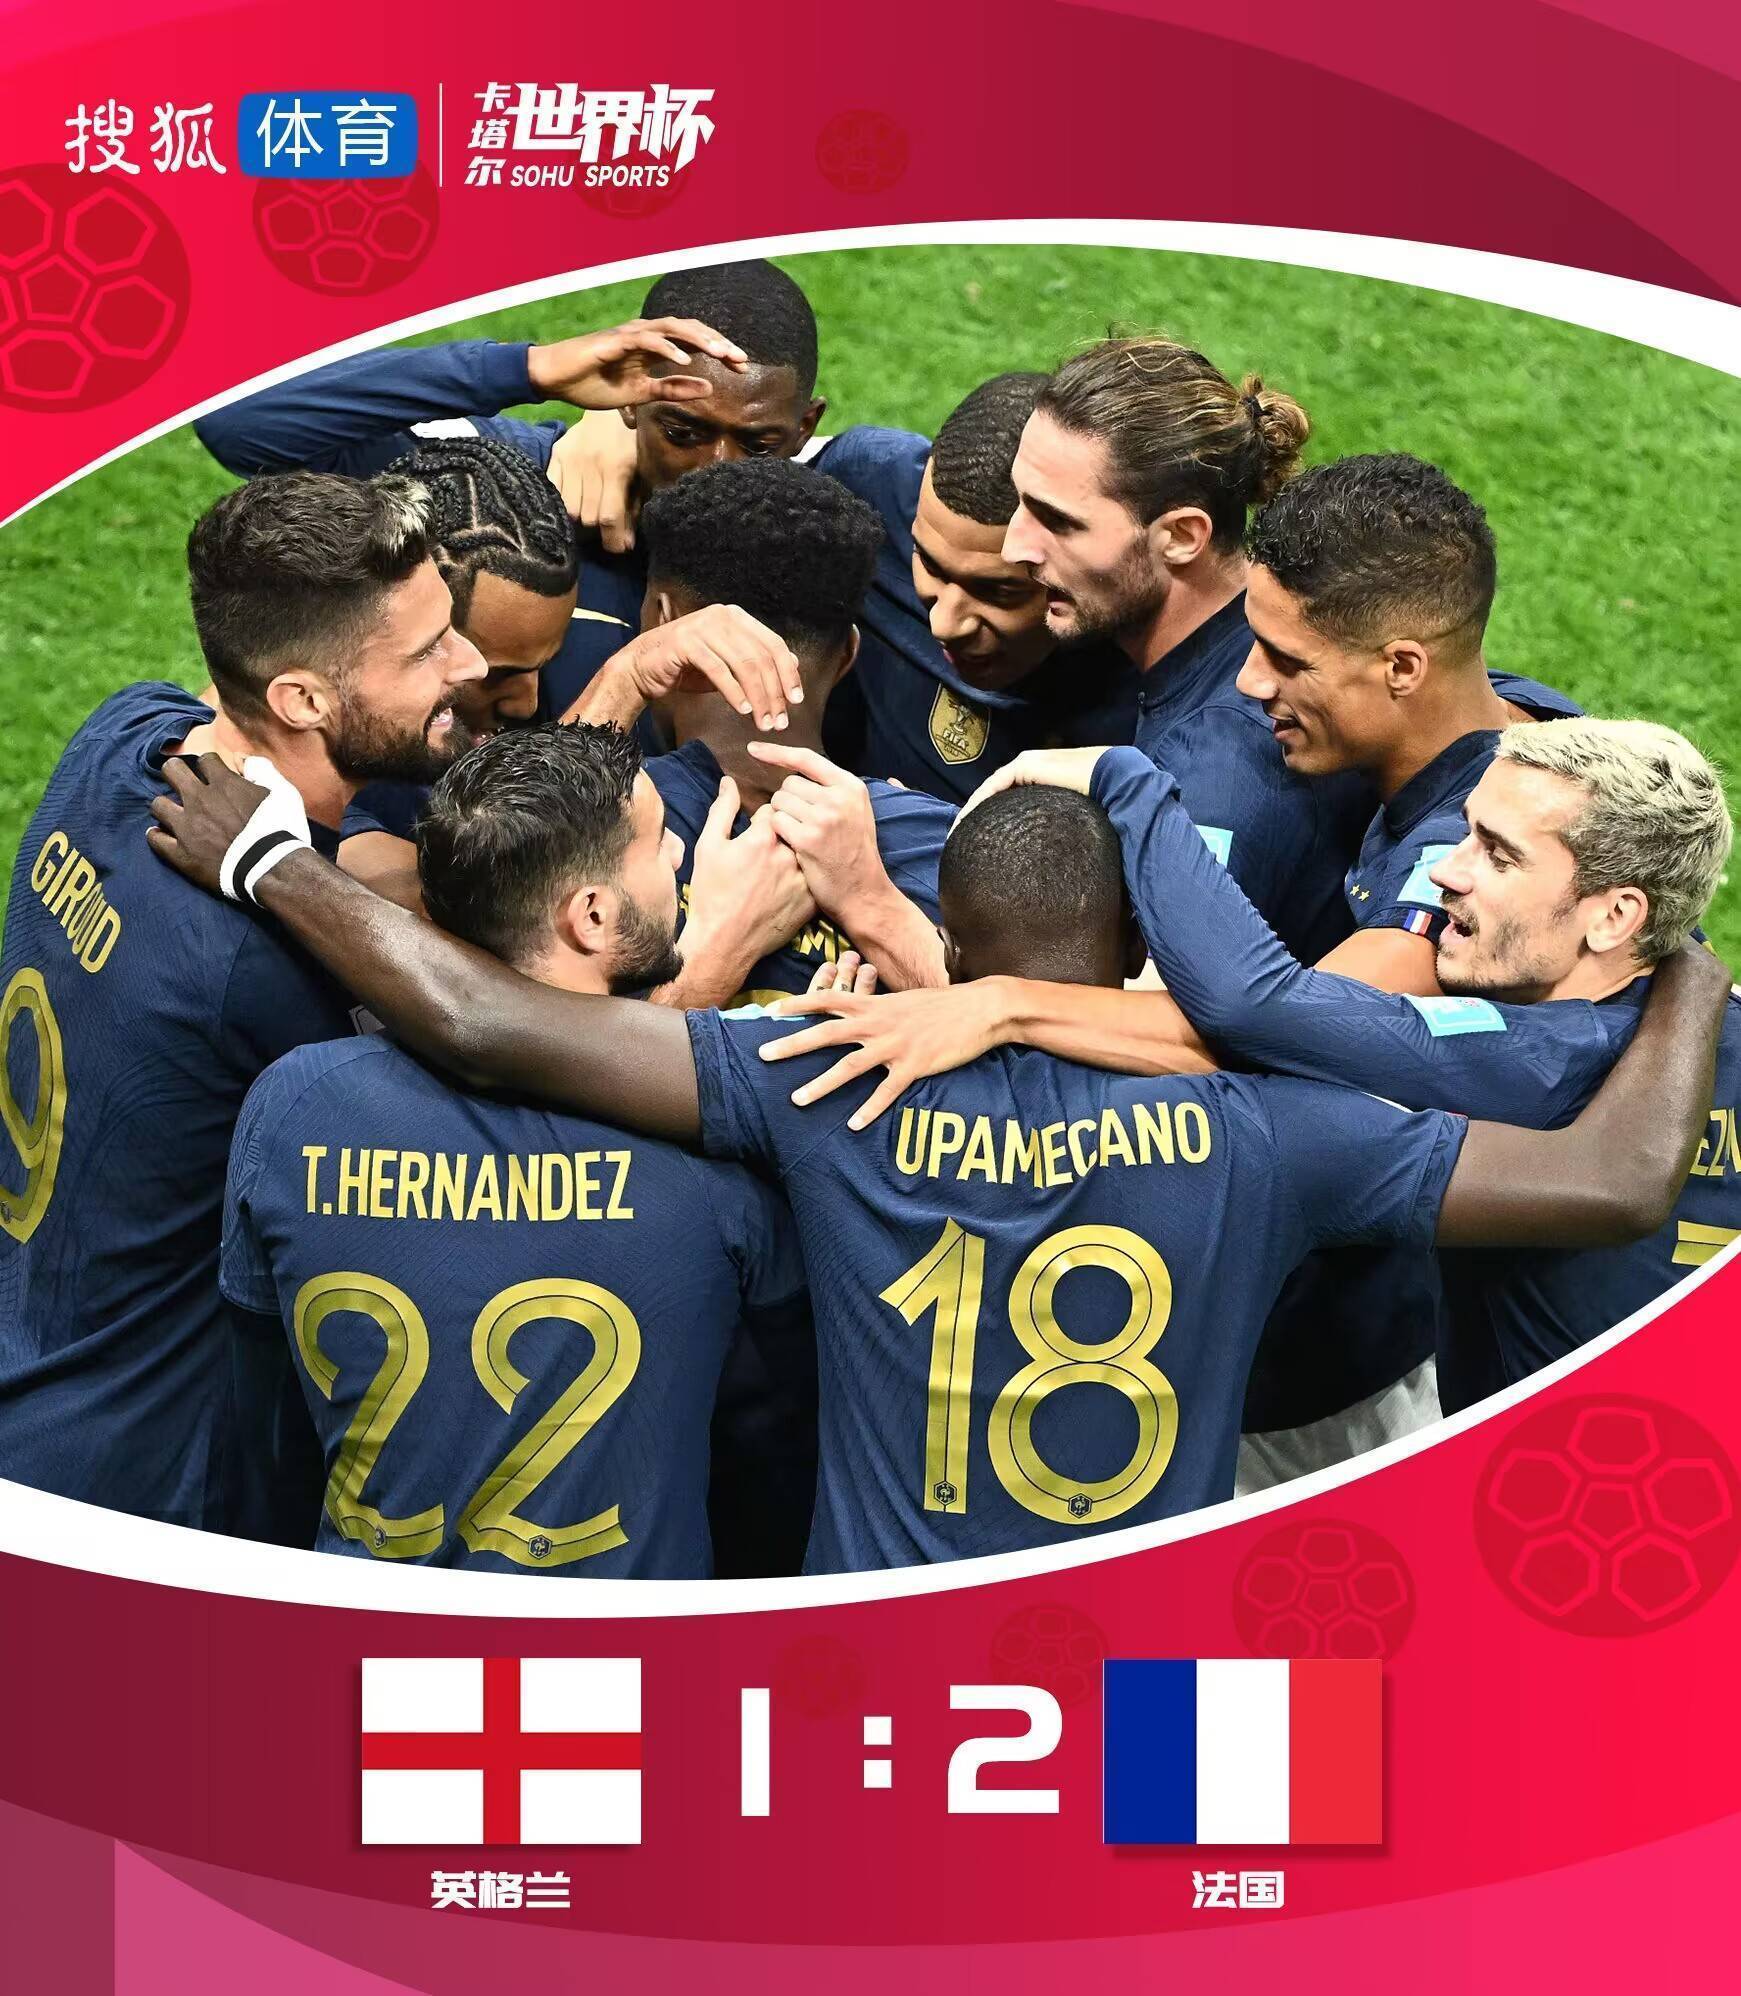 世界杯-吉鲁破门凯恩点射+失点 法国2-1英格兰晋级4强